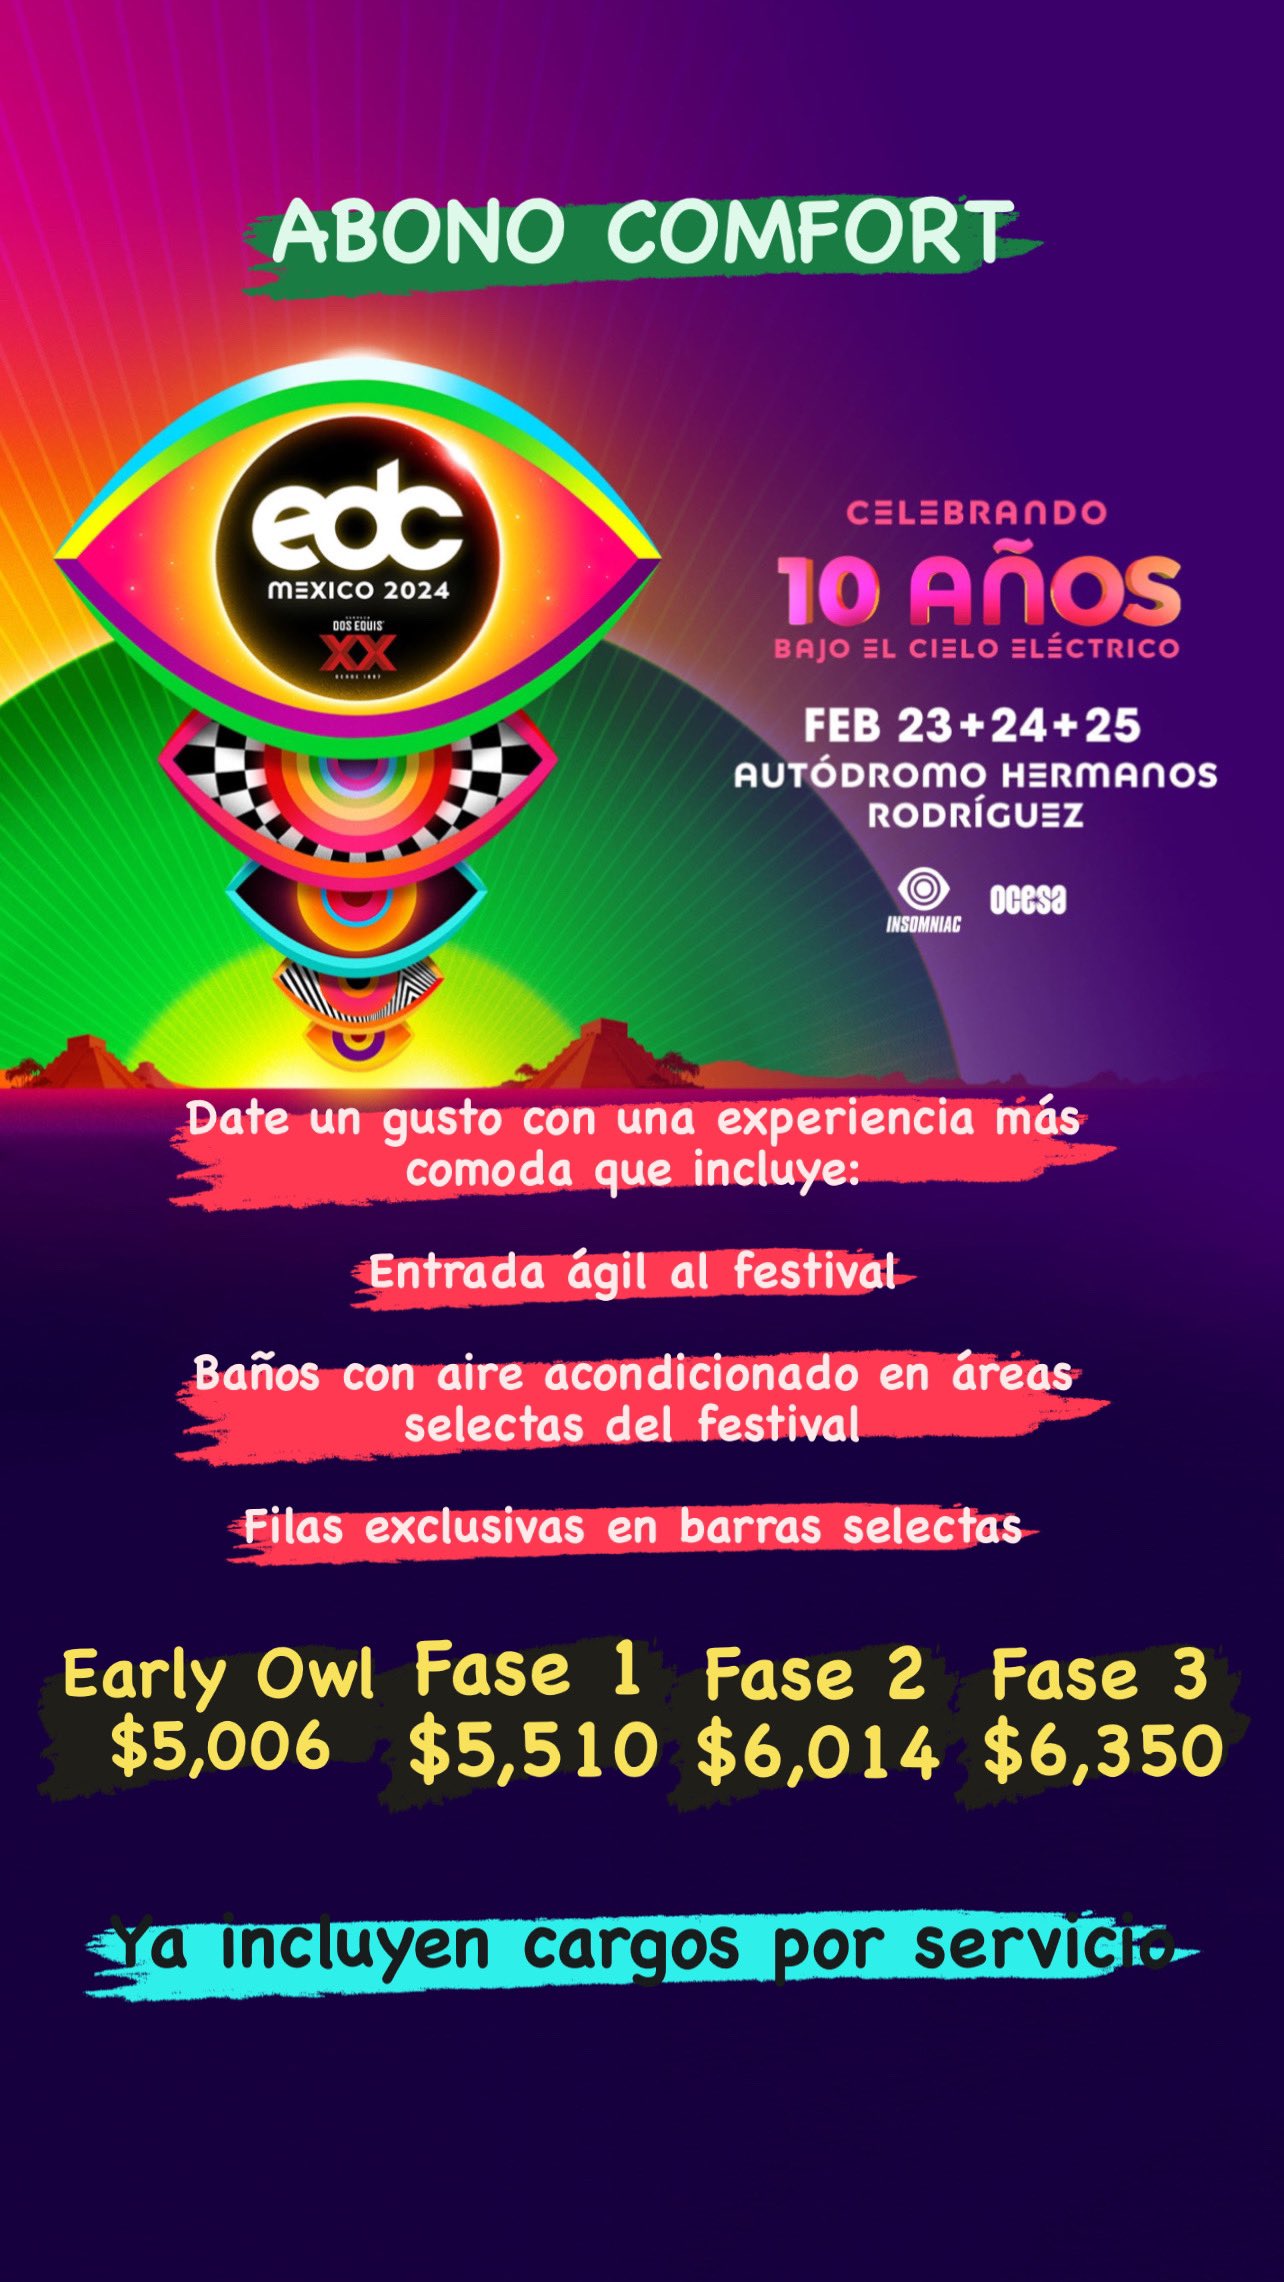 EDC México 2024: Insomniac y Ocesa presentan detalles del evento 15